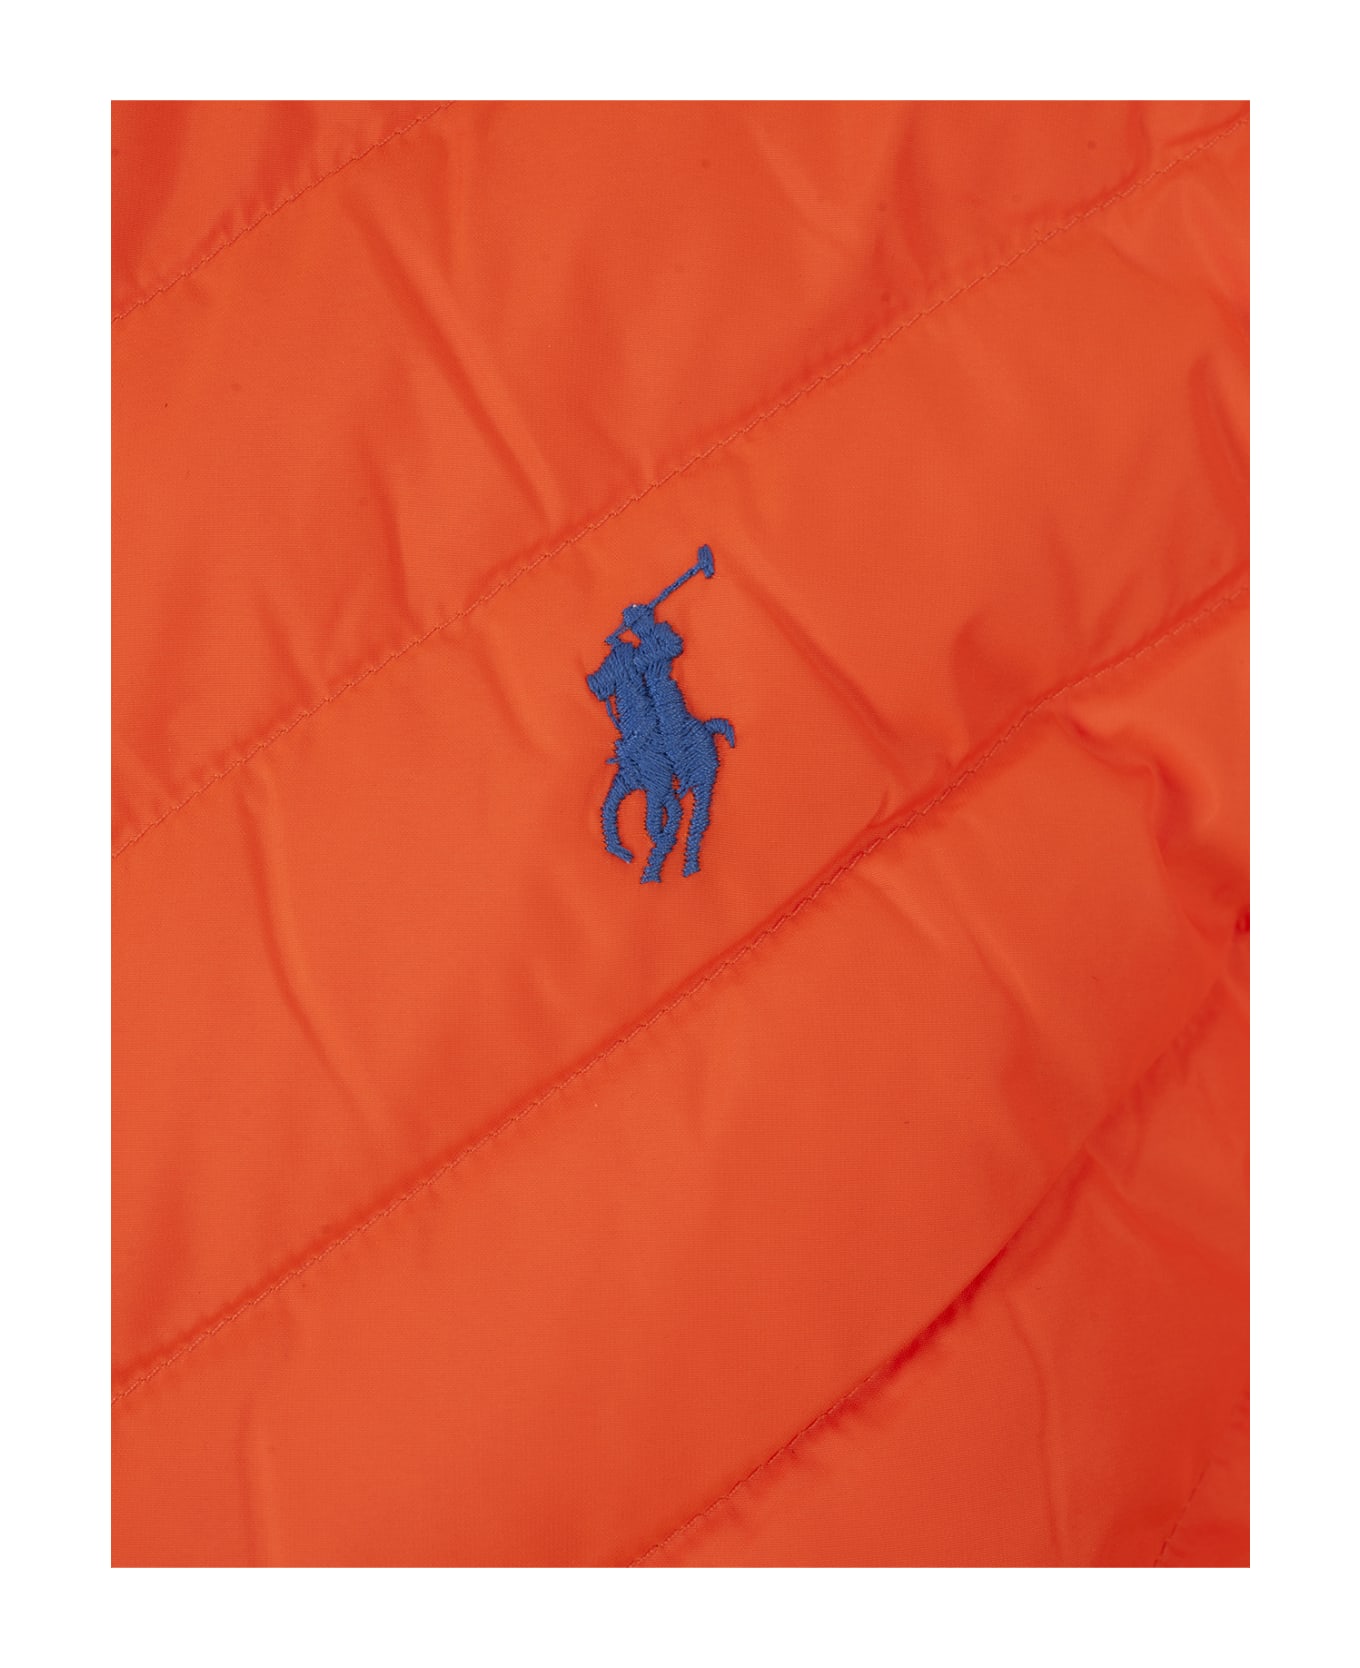 Polo Ralph Lauren Orange Foldable Water Repellent Jacket Down Jacket - ORANGE ダウンジャケット